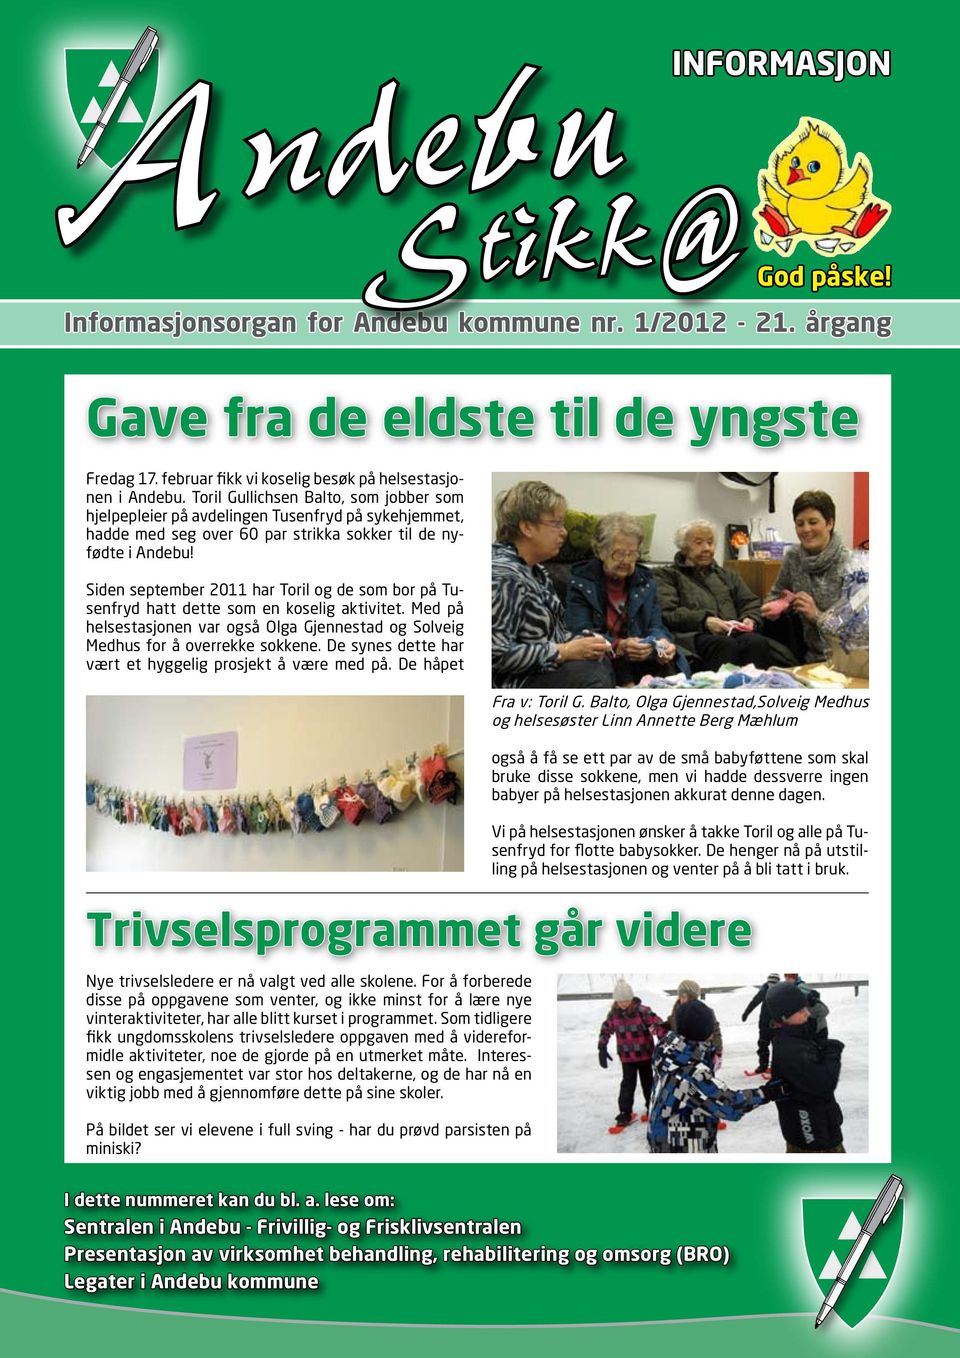 Siden september 2011 har Toril og de som bor på Tusenfryd hatt dette som en koselig aktivitet. Med på helsestasjonen var også Olga Gjennestad og Solveig Medhus for å overrekke sokkene.